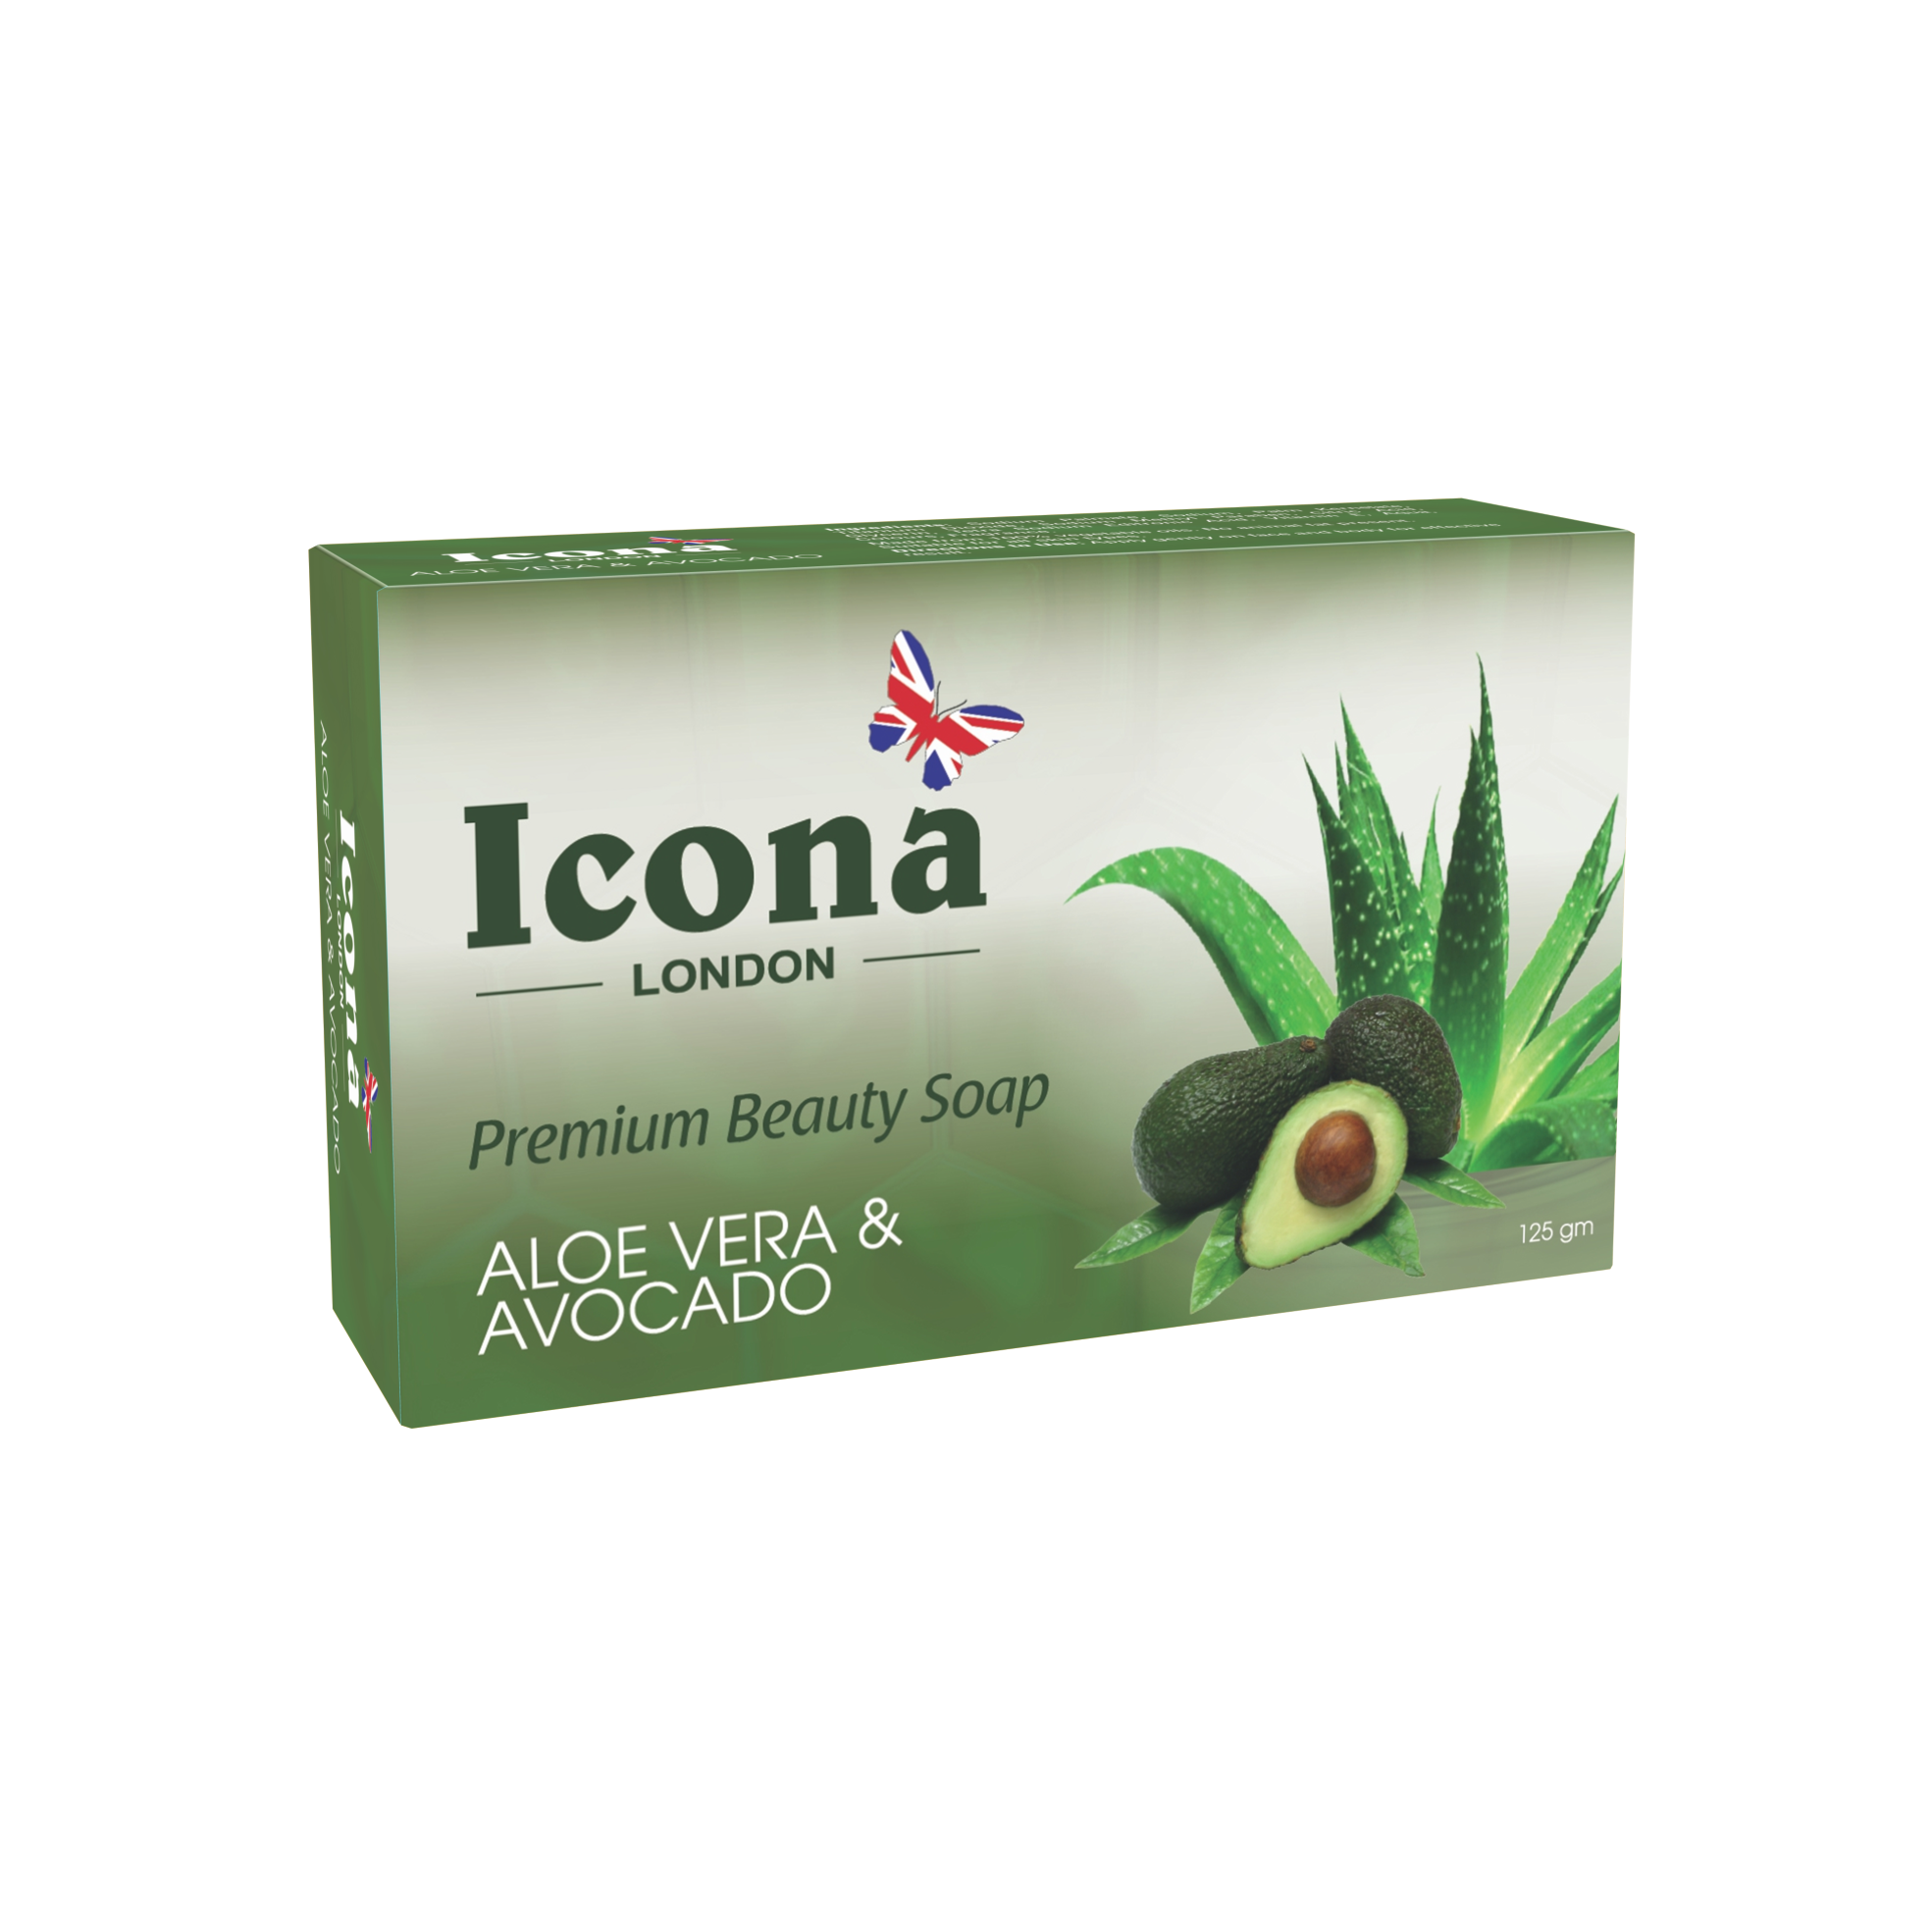 Icona London Beauty Soap (Aloe vera & Avocado)